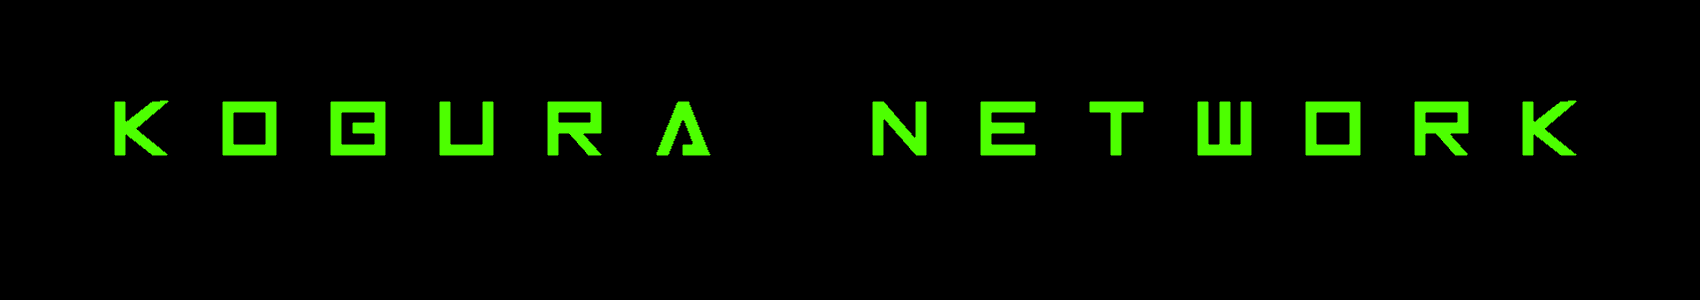 Banner for Kobura Network Minecraft server